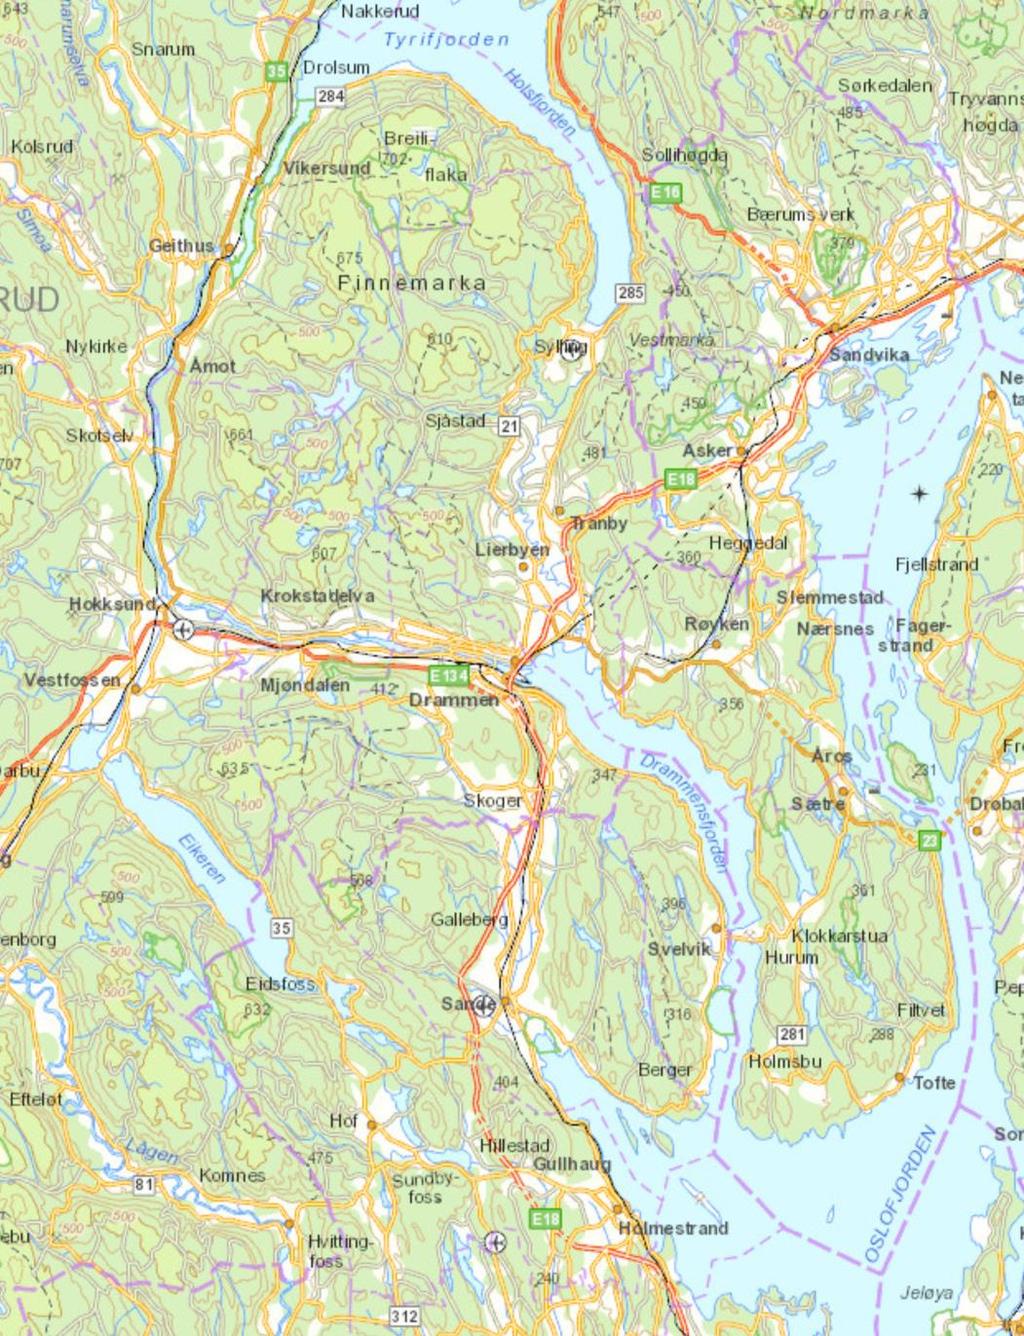 Hokksund Mjøndalen Muusøya SOLUM- STRAND Linnes Lahell VEAS Uutløst potensiale Avløpsrensing Utfordringer på renseanleggssiden i hele regionen.